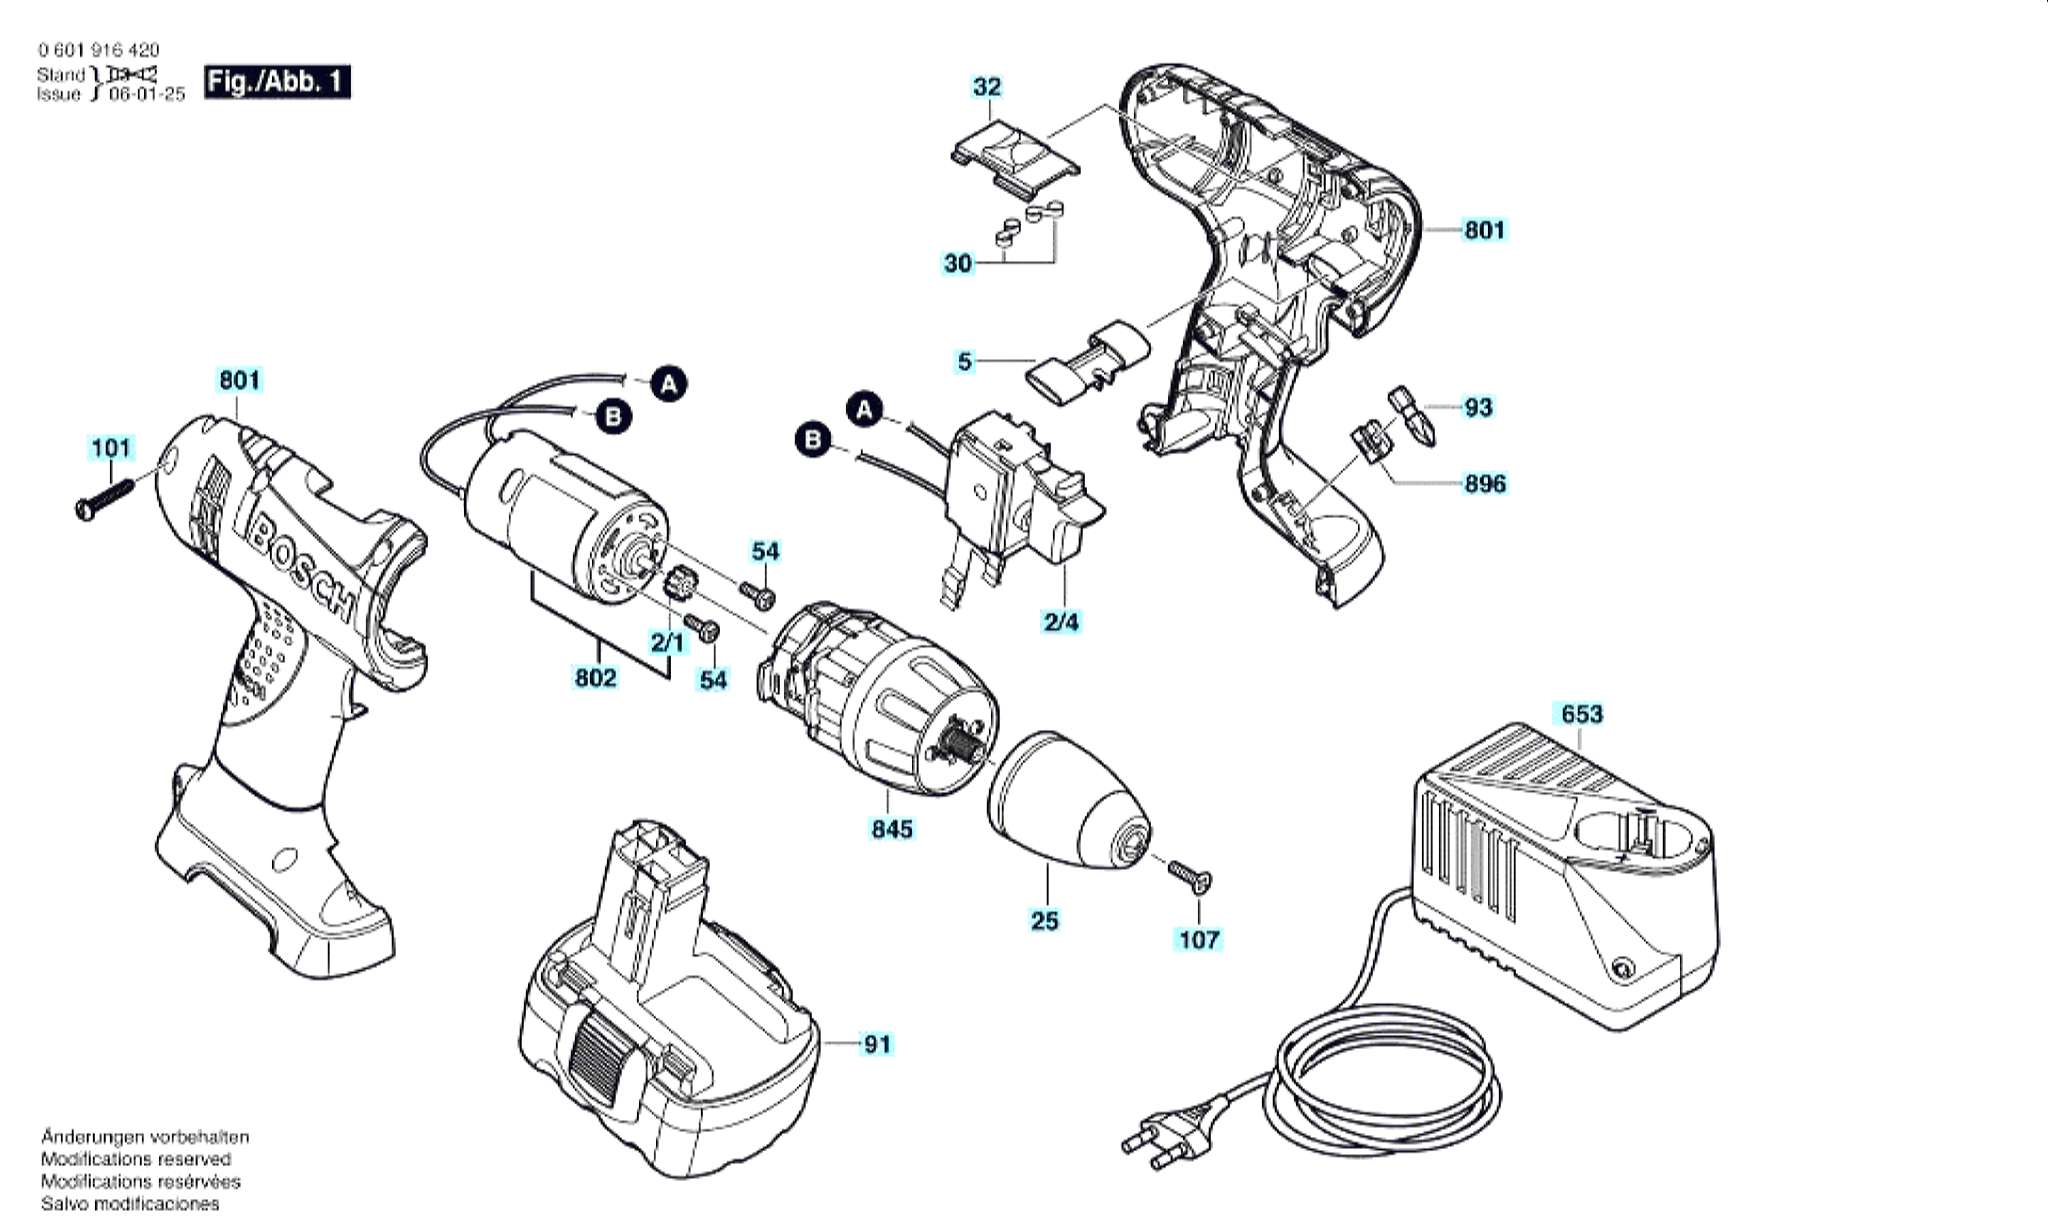 Запчасти, схема и деталировка Bosch GSR 14,4 V (ТИП 0601916430)